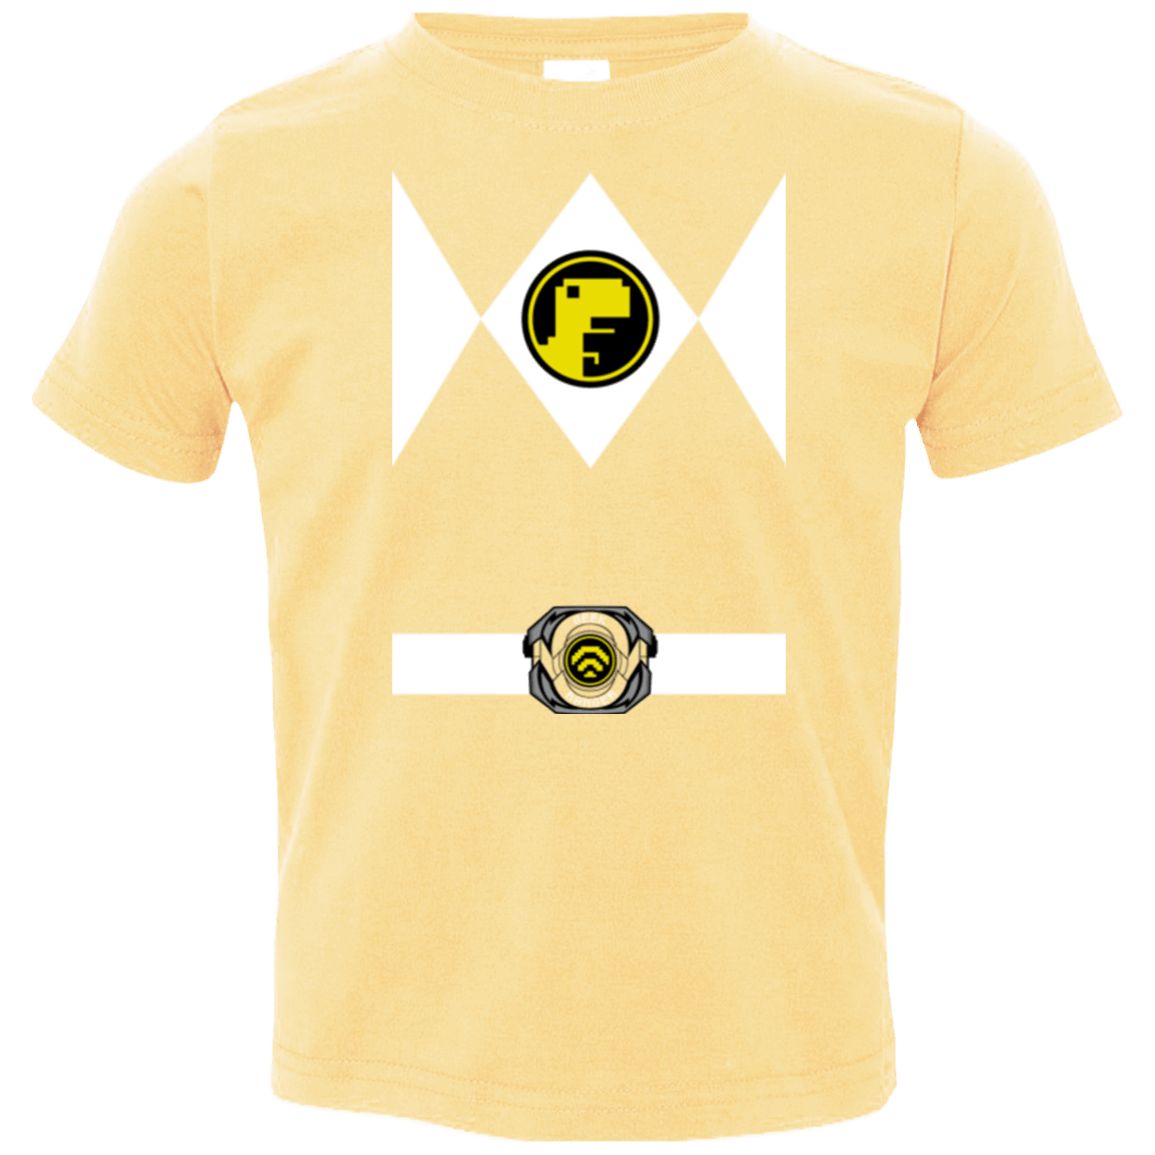 T-Shirts Butter / 2T Geek Ranger Toddler Premium T-Shirt